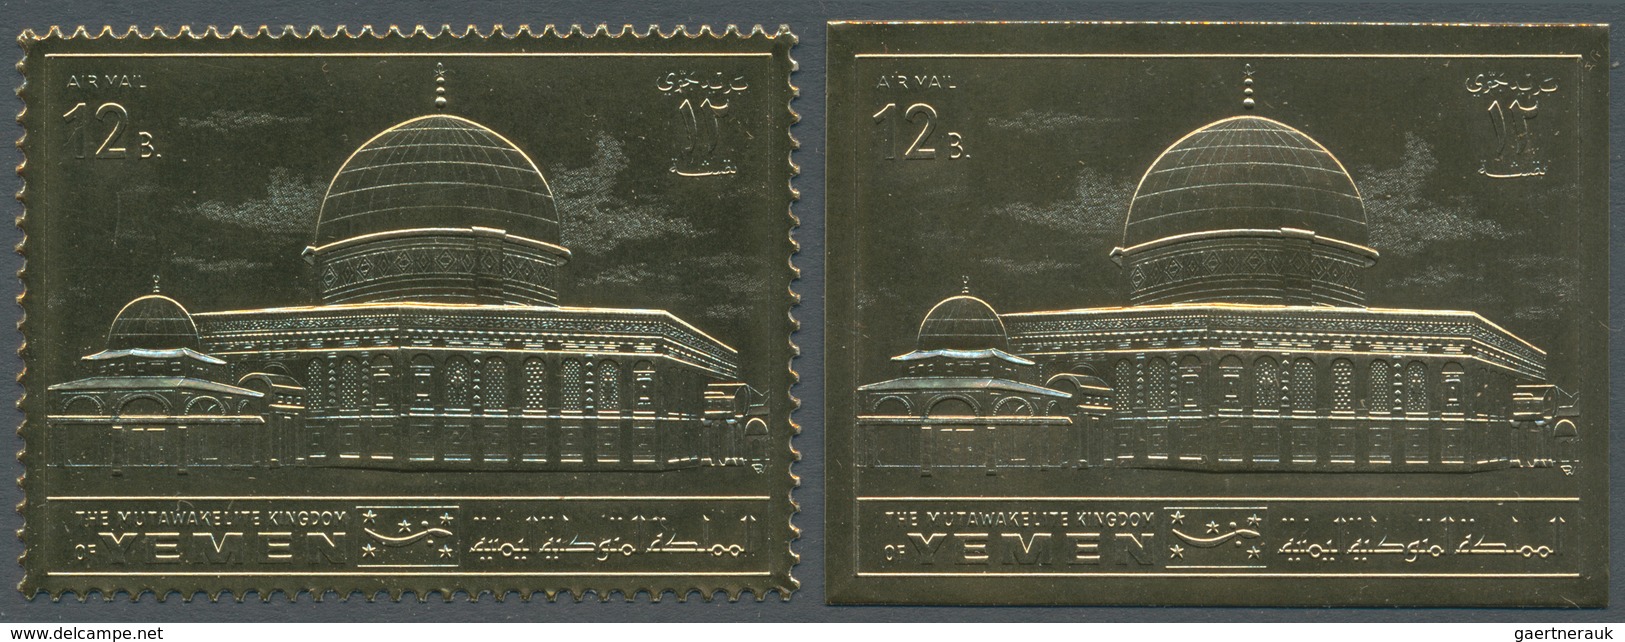 Jemen - Königreich: 1969, Holy Sites 'Dome Of The Rock In Jerusalem' Gold Foil Stamps Investment Lot - Jemen